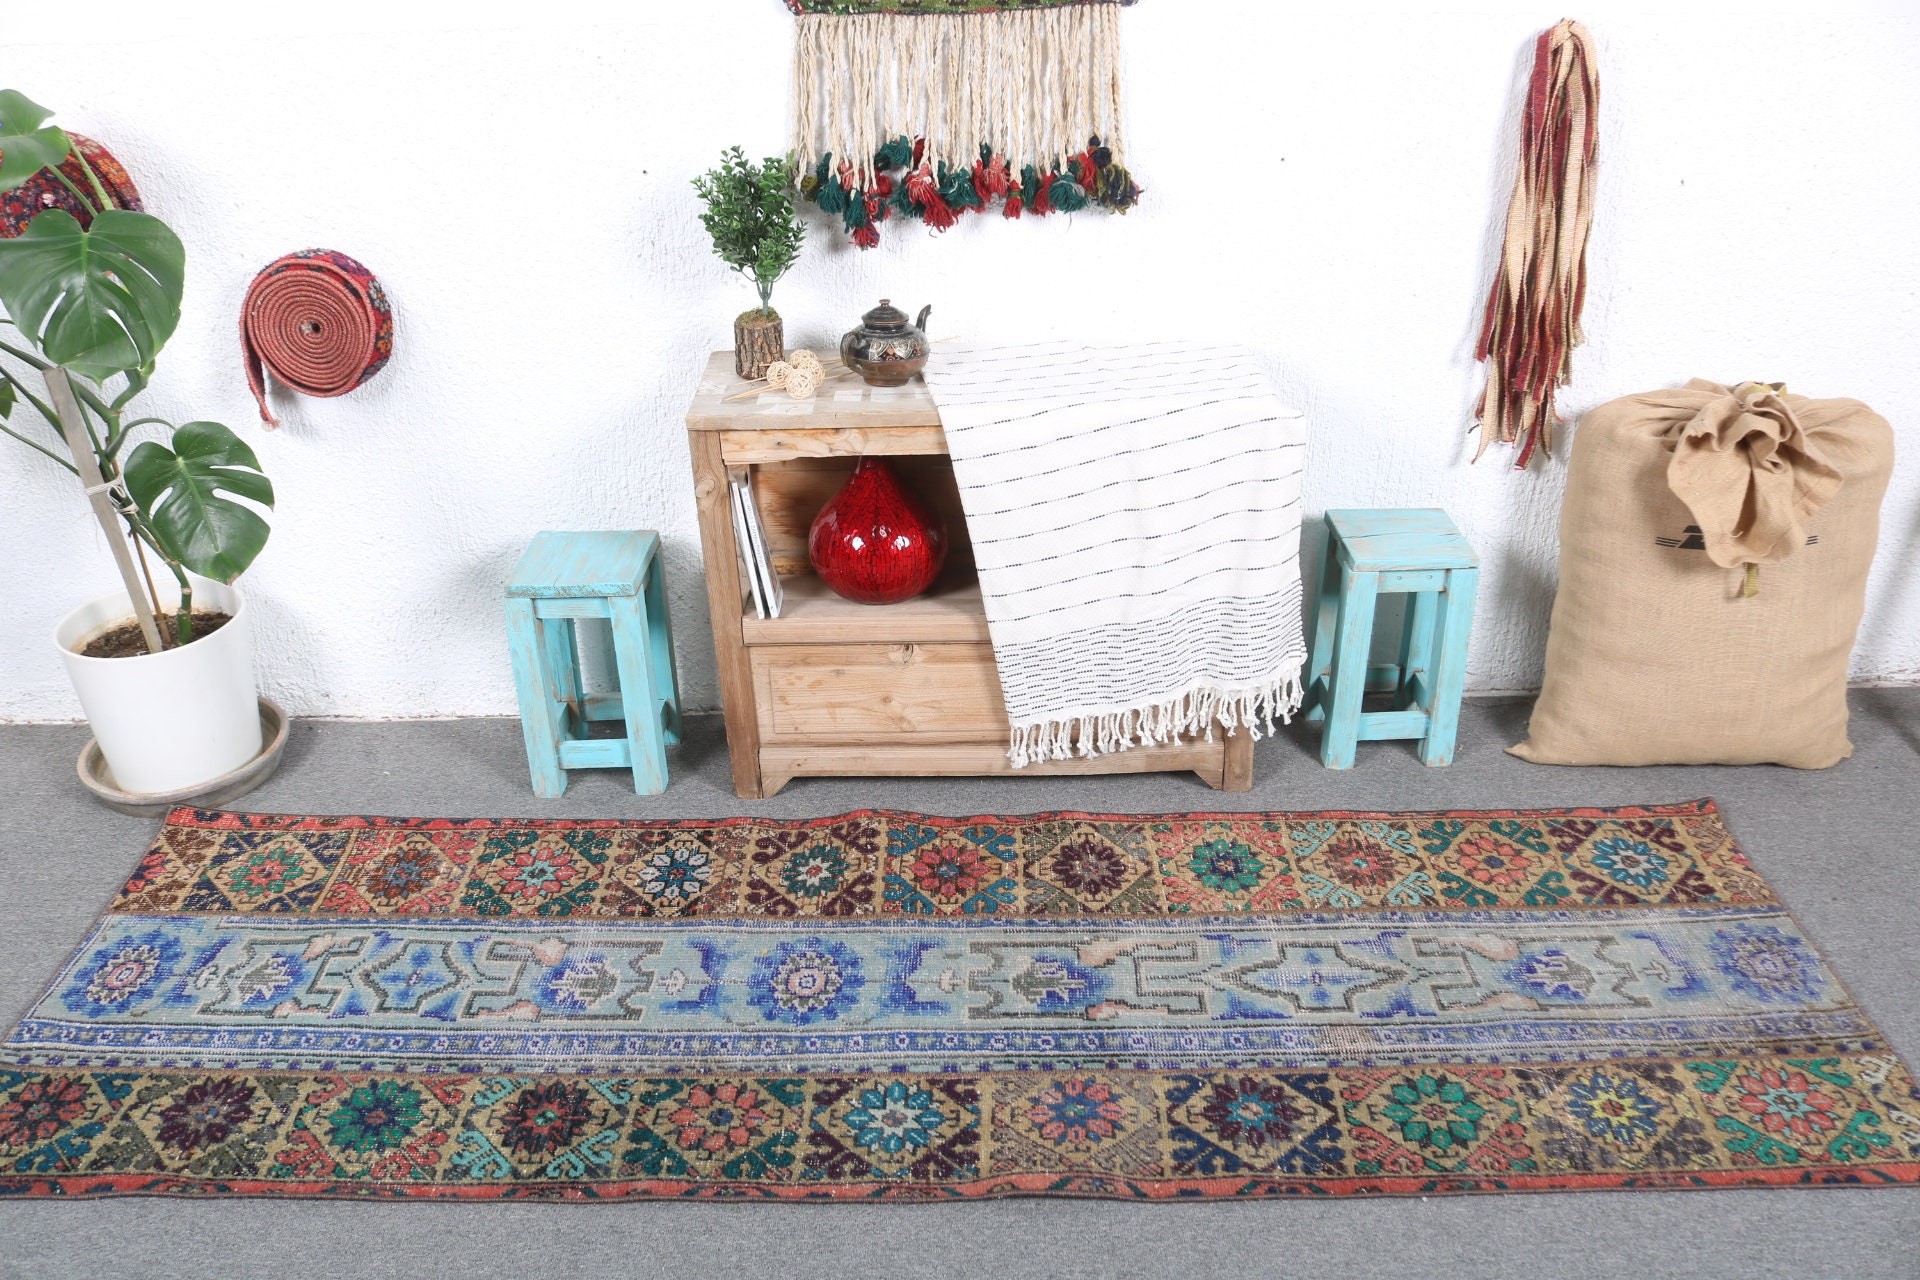 Turkish Rug, Kitchen Rugs, Vintage Rug, Wedding Rug, Bedroom Rug, Blue Home Decor Rug, Stair Rugs, 2.5x7.8 ft Runner Rugs